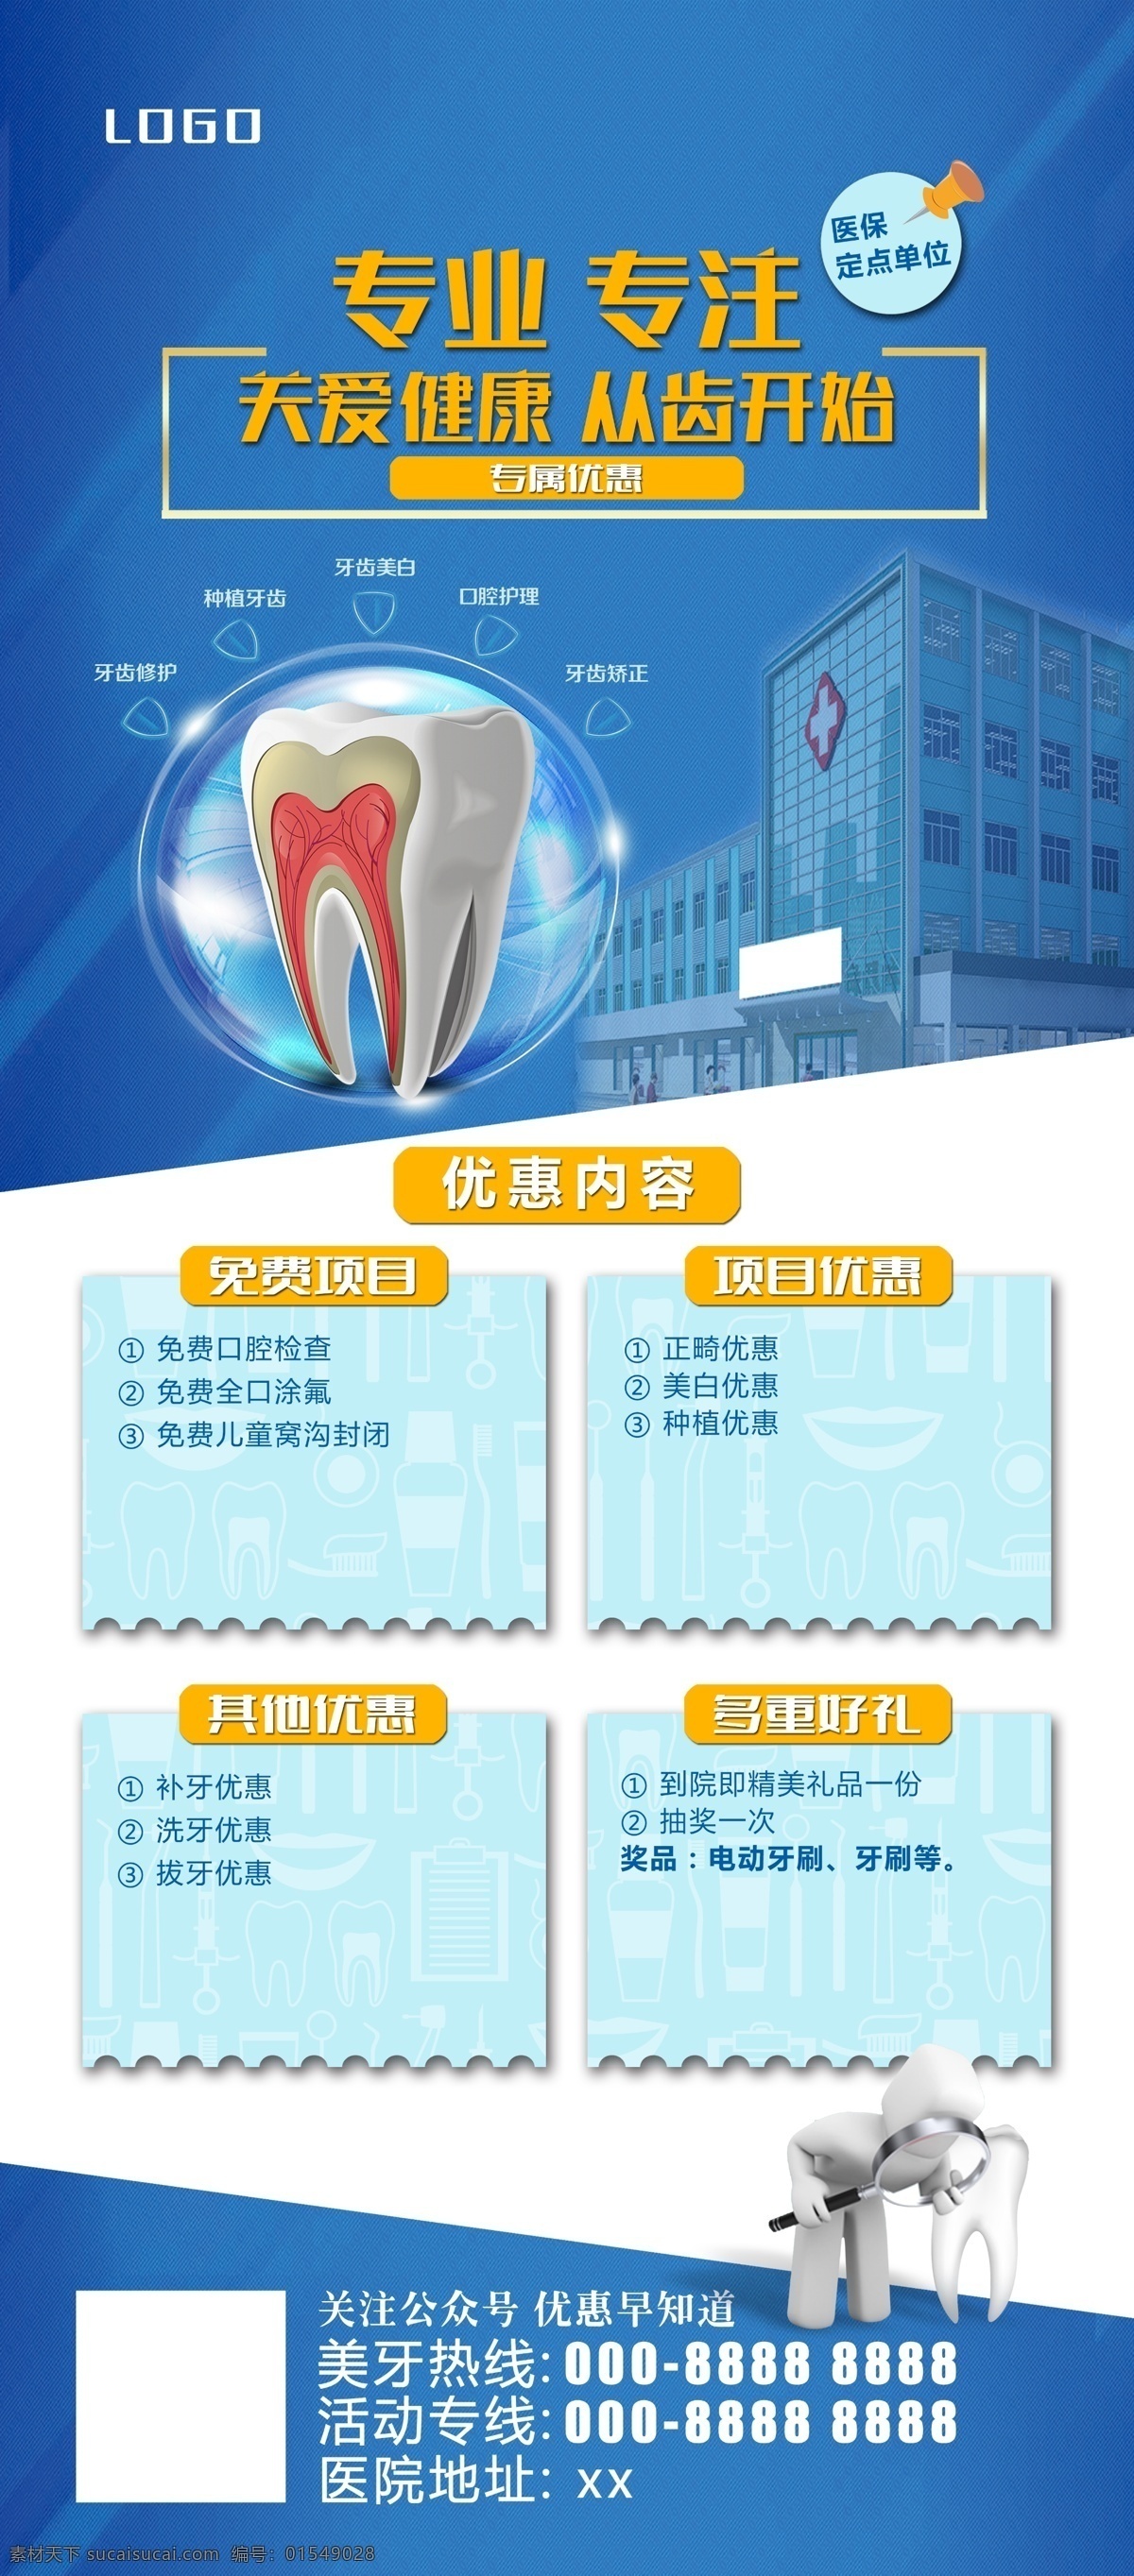 牙齿活动展架 牙齿广告 牙齿展架 牙科展架 活动展架 诊疗优惠 优惠活动展架 牙科广告 展板模板